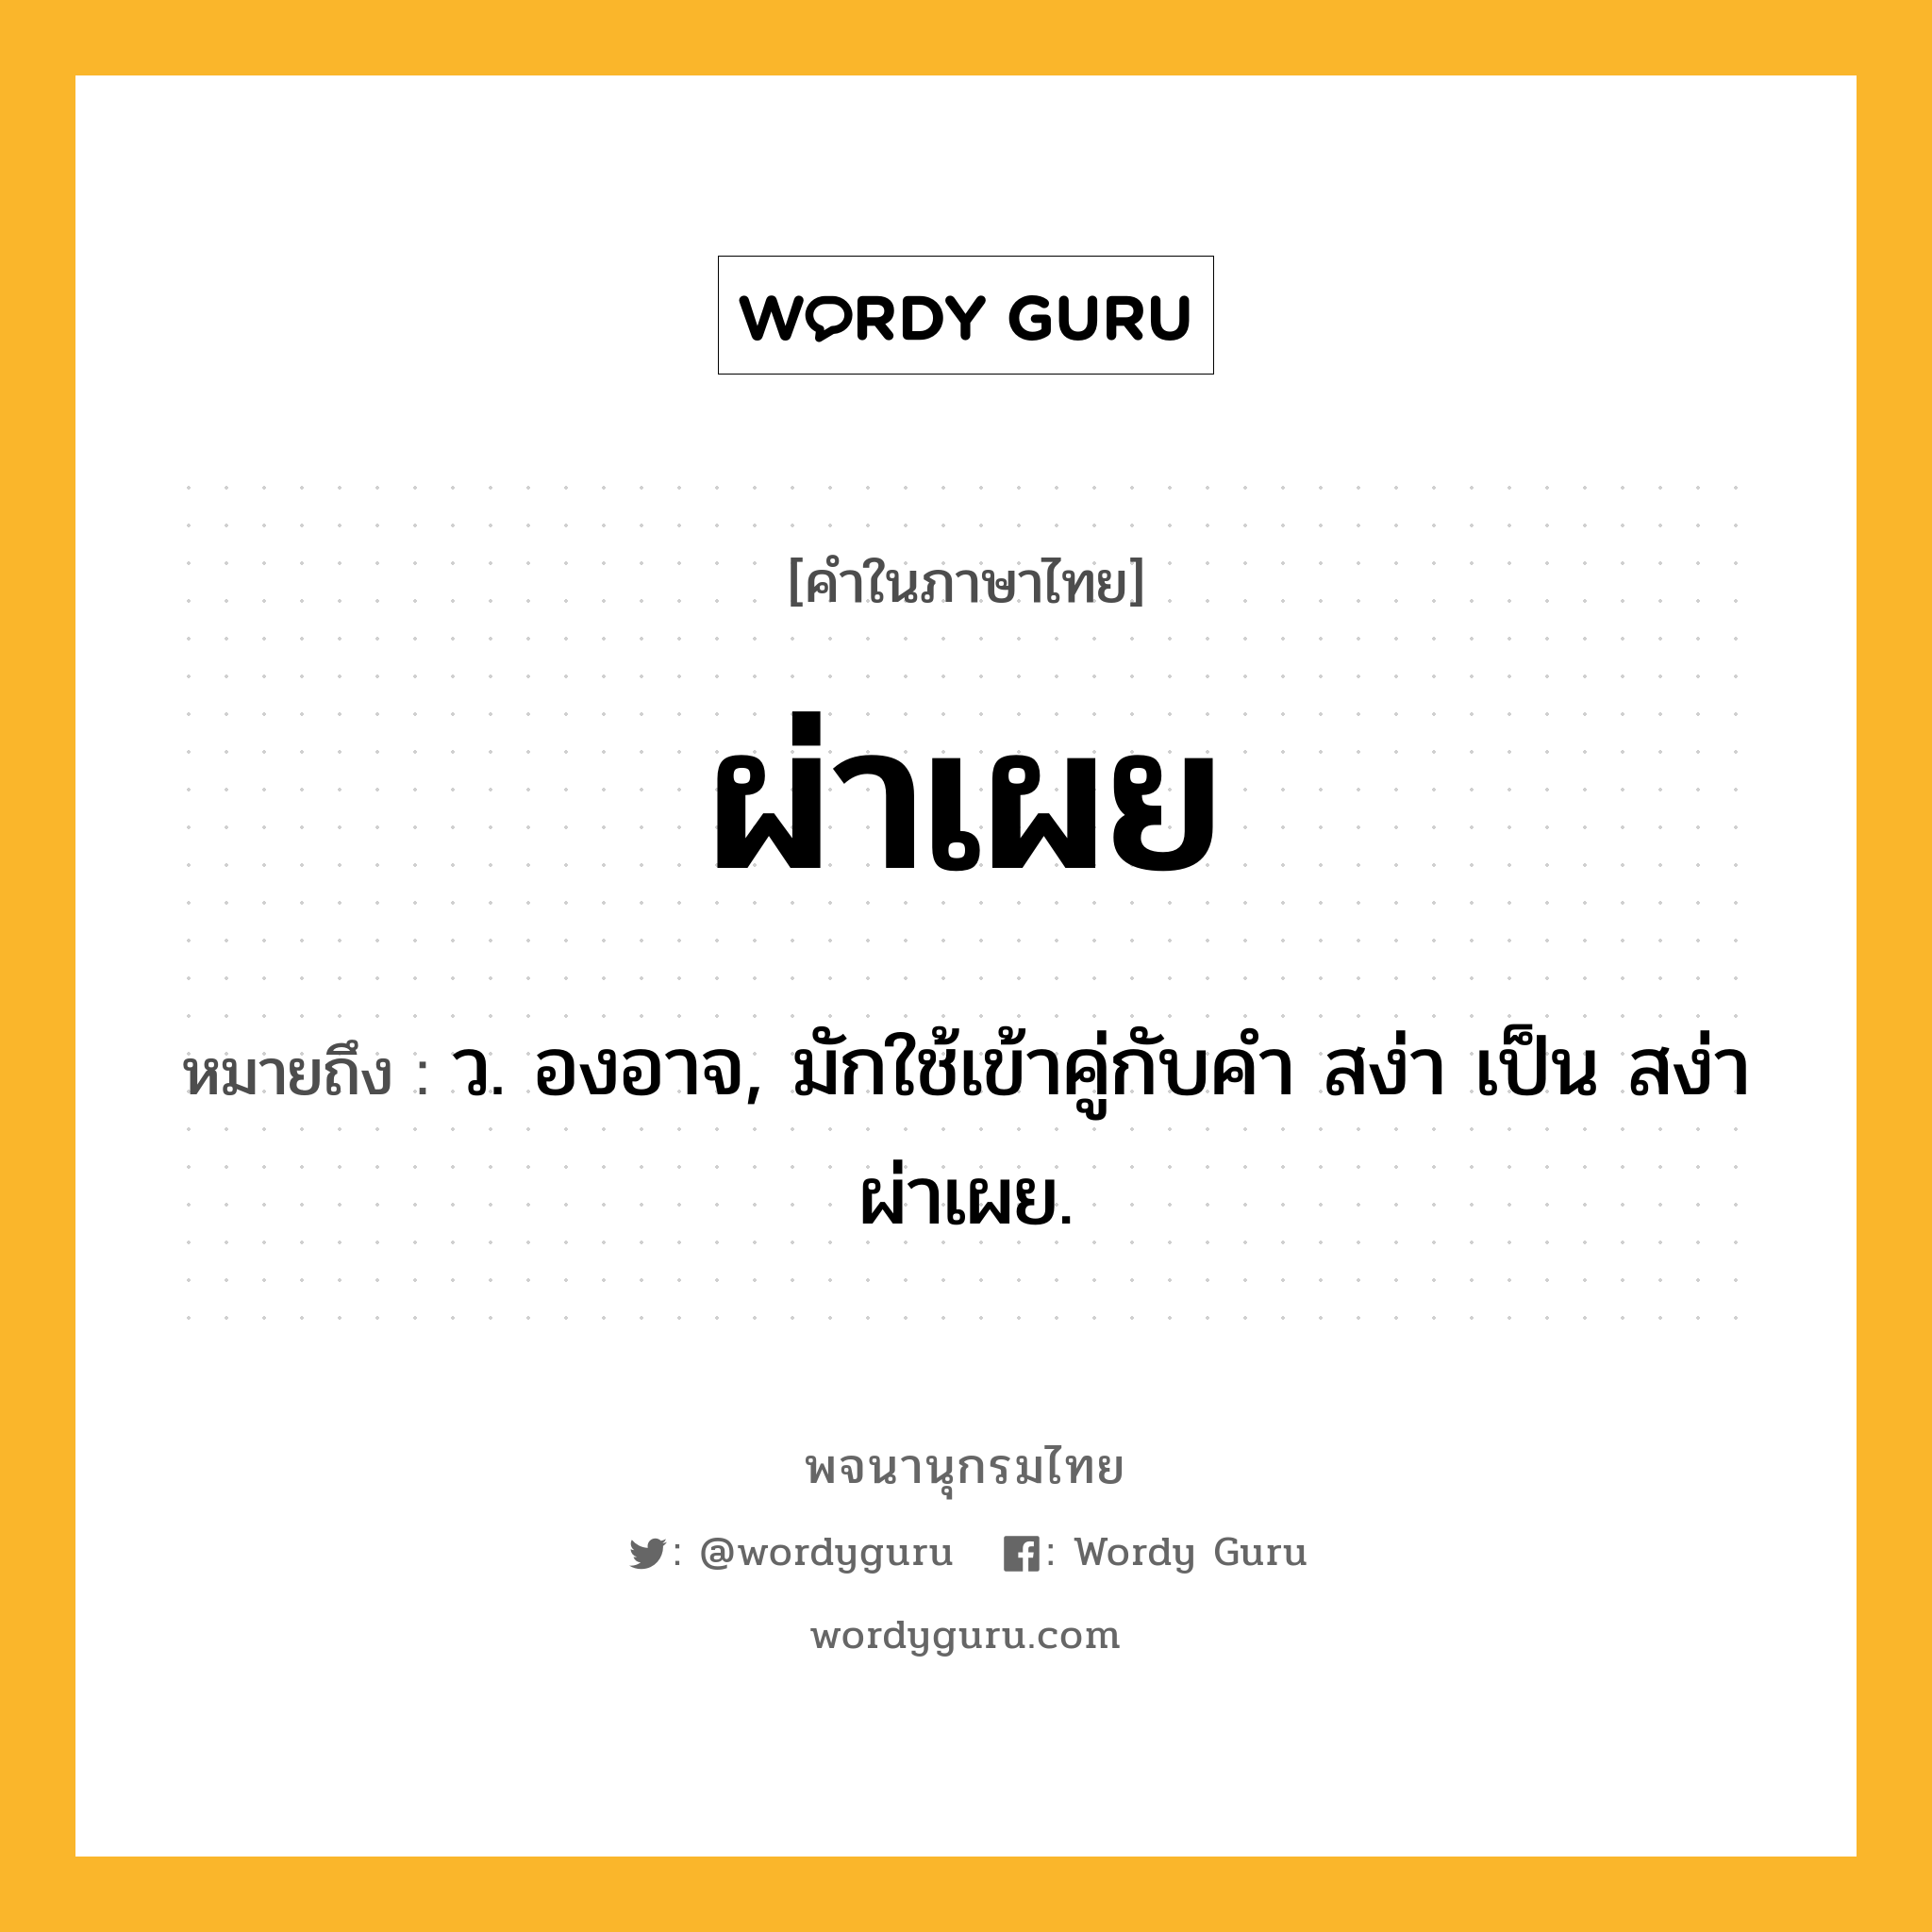 ผ่าเผย ความหมาย หมายถึงอะไร?, คำในภาษาไทย ผ่าเผย หมายถึง ว. องอาจ, มักใช้เข้าคู่กับคํา สง่า เป็น สง่าผ่าเผย.